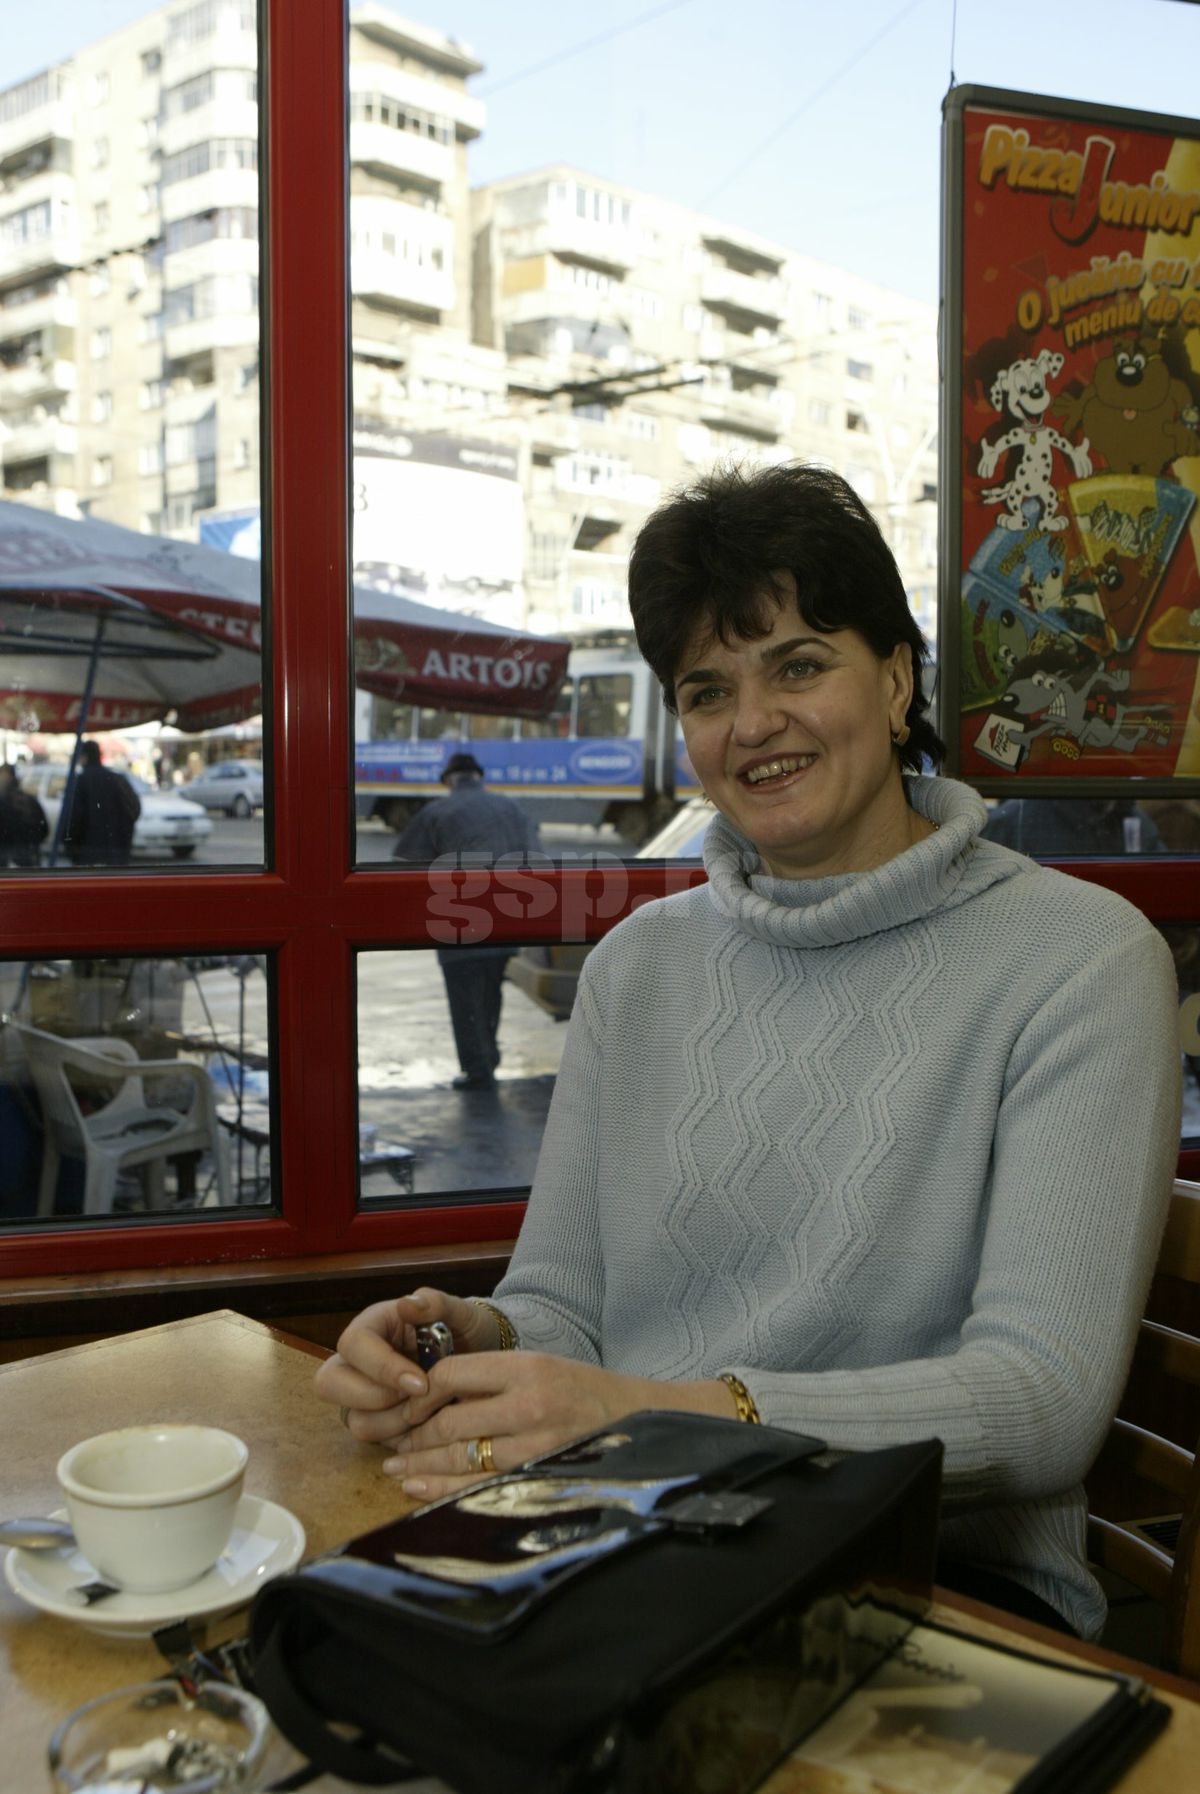 Imagini de colectie cu Elisabeta Lipă, campioana României la canotaj. Foto: Arhivă GSP